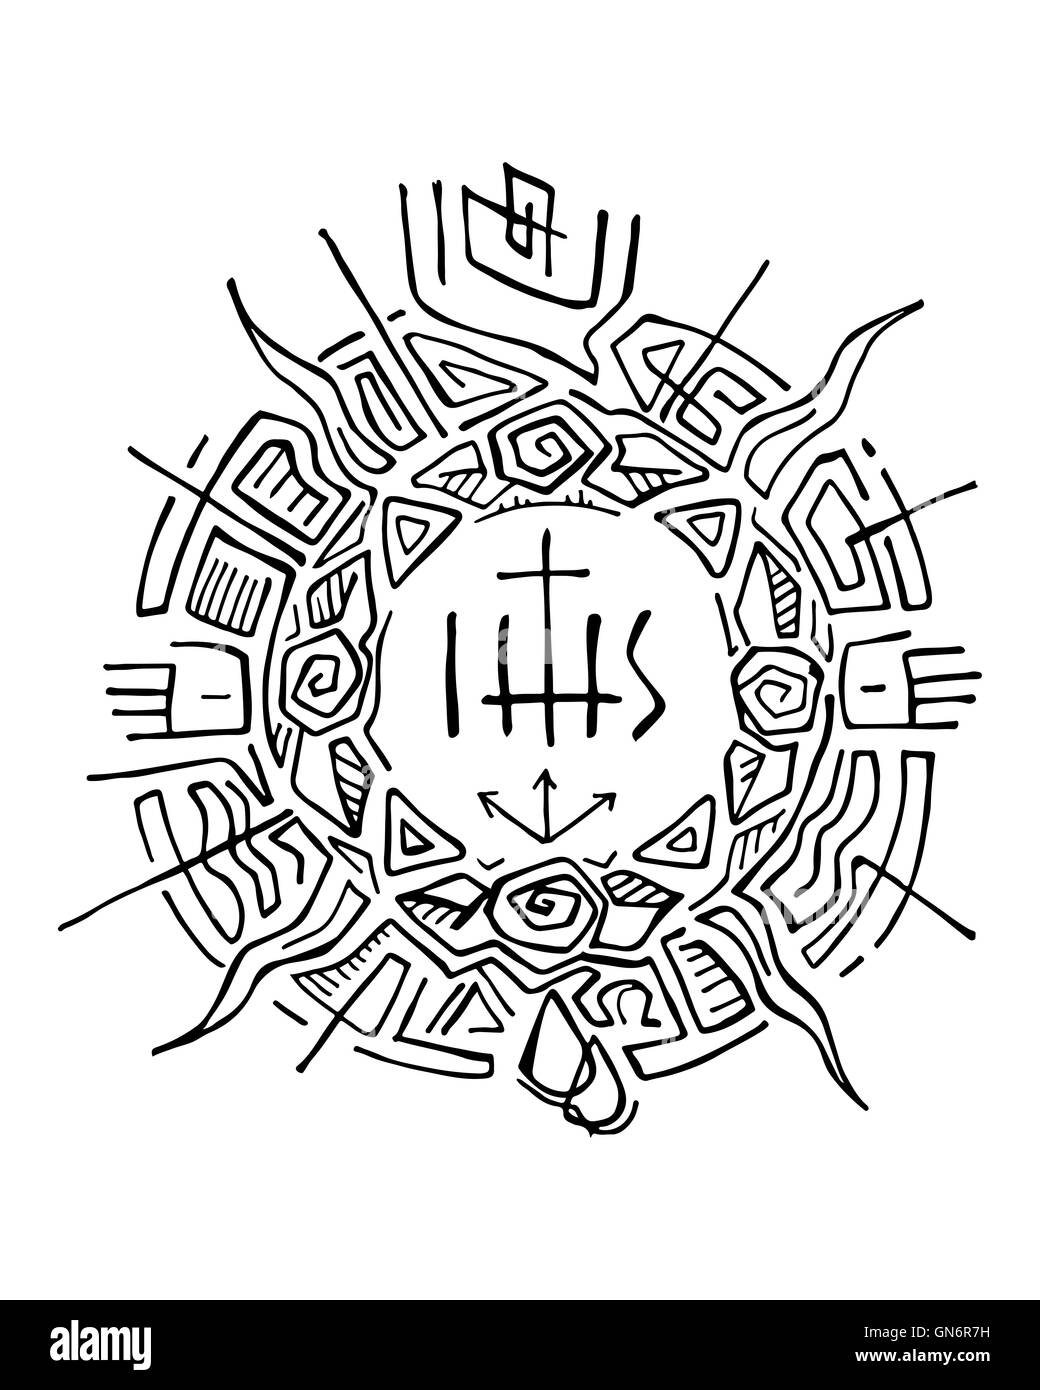 Handgezeichnete Illustrationen oder Zeichnung einer abstrakten Sonne mit religiösen christlichen Symbolen Stockfoto